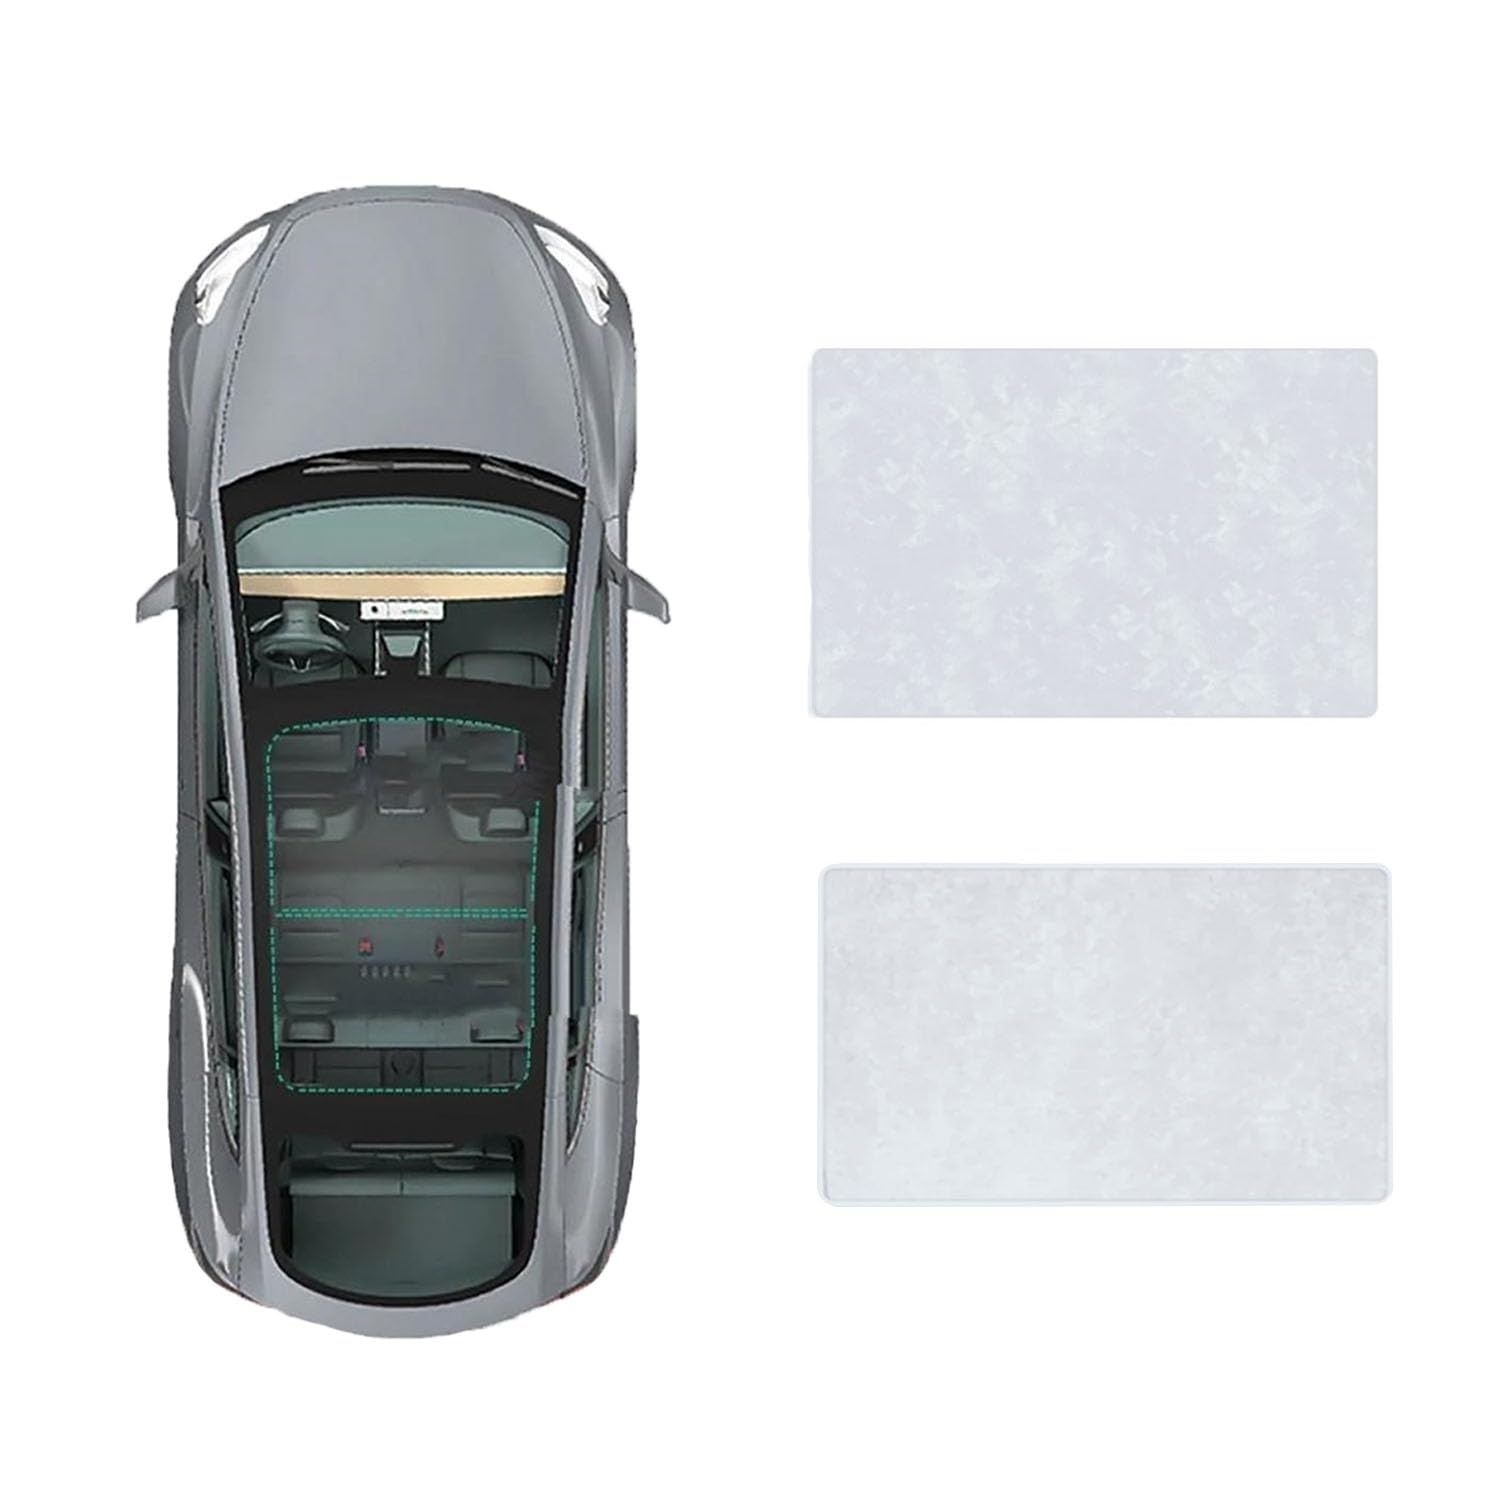 Für INSPIRE 2019- Auto-Schiebedach-Beschattung,Dach Wärme Isolierung Anti-UV Visier Auto Zubehör,B-Gray white Suede von ANRAM